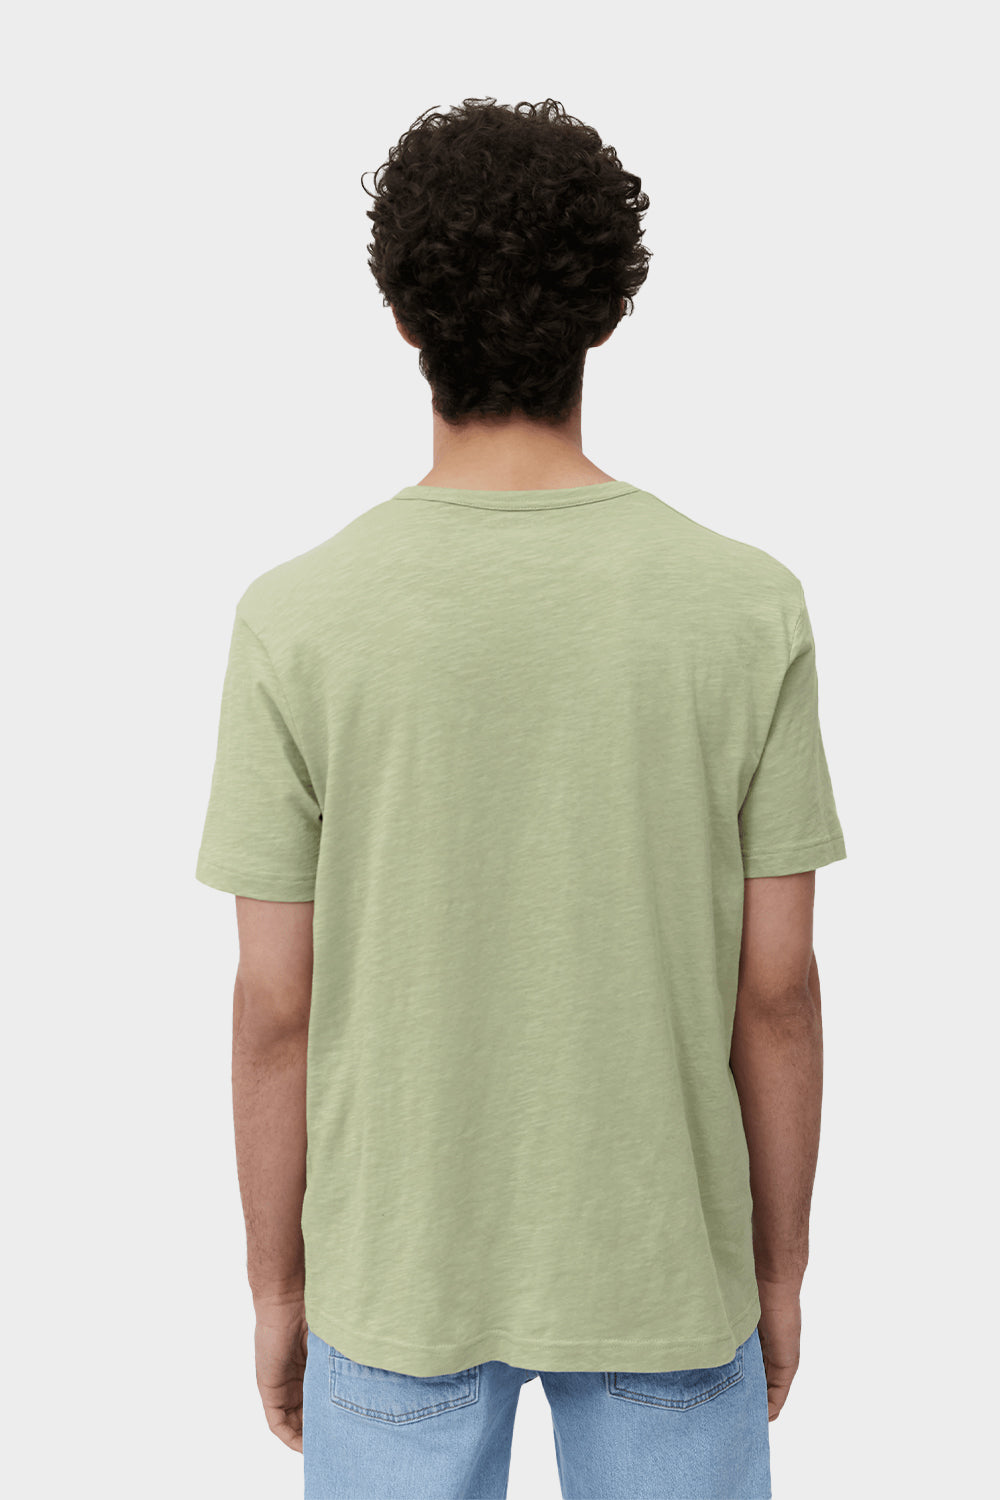 חולצה לגברים בצבע ירוק MARC O POLO MARC O'POLO Vendome online | ונדום .